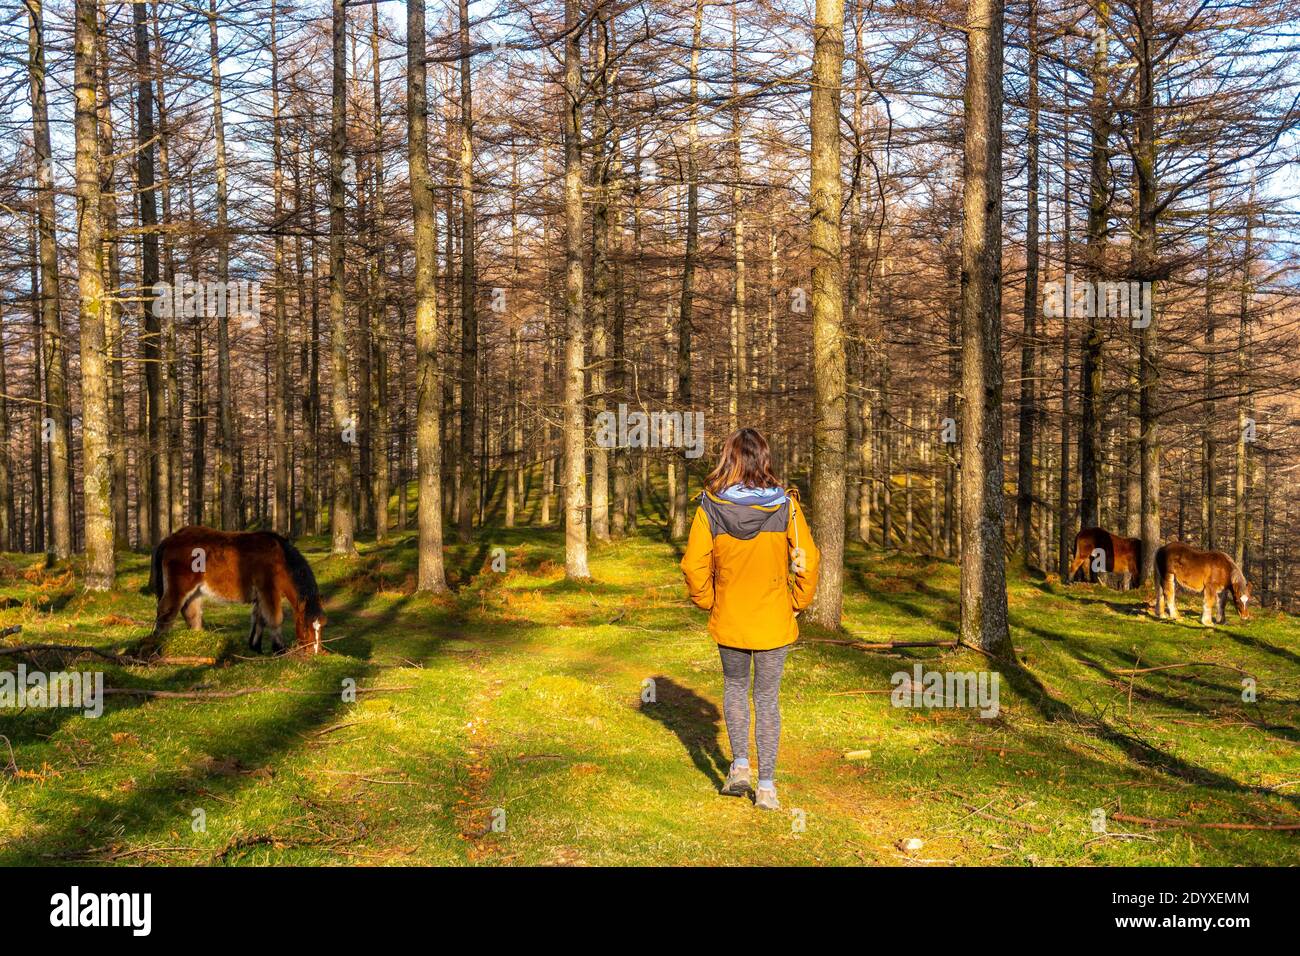 Junge Wanderin in einer gelben Jacke neben einem Wildpferd im Buchenwald von Oianleku Stockfoto